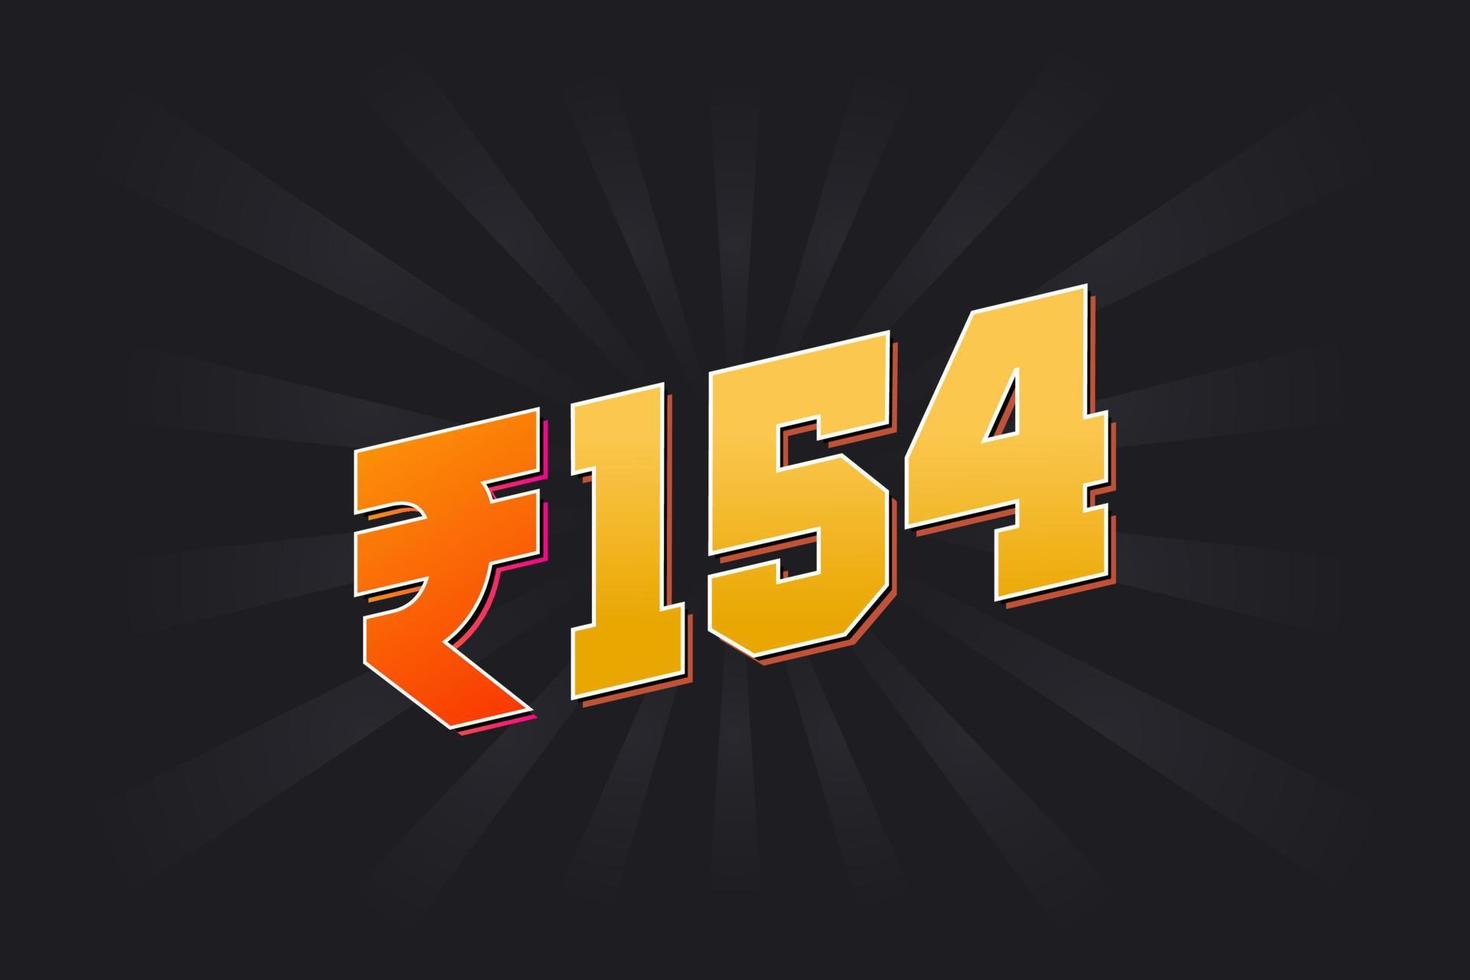 Image vectorielle de 154 roupies indiennes. 154 roupie symbole texte en gras illustration vectorielle vecteur